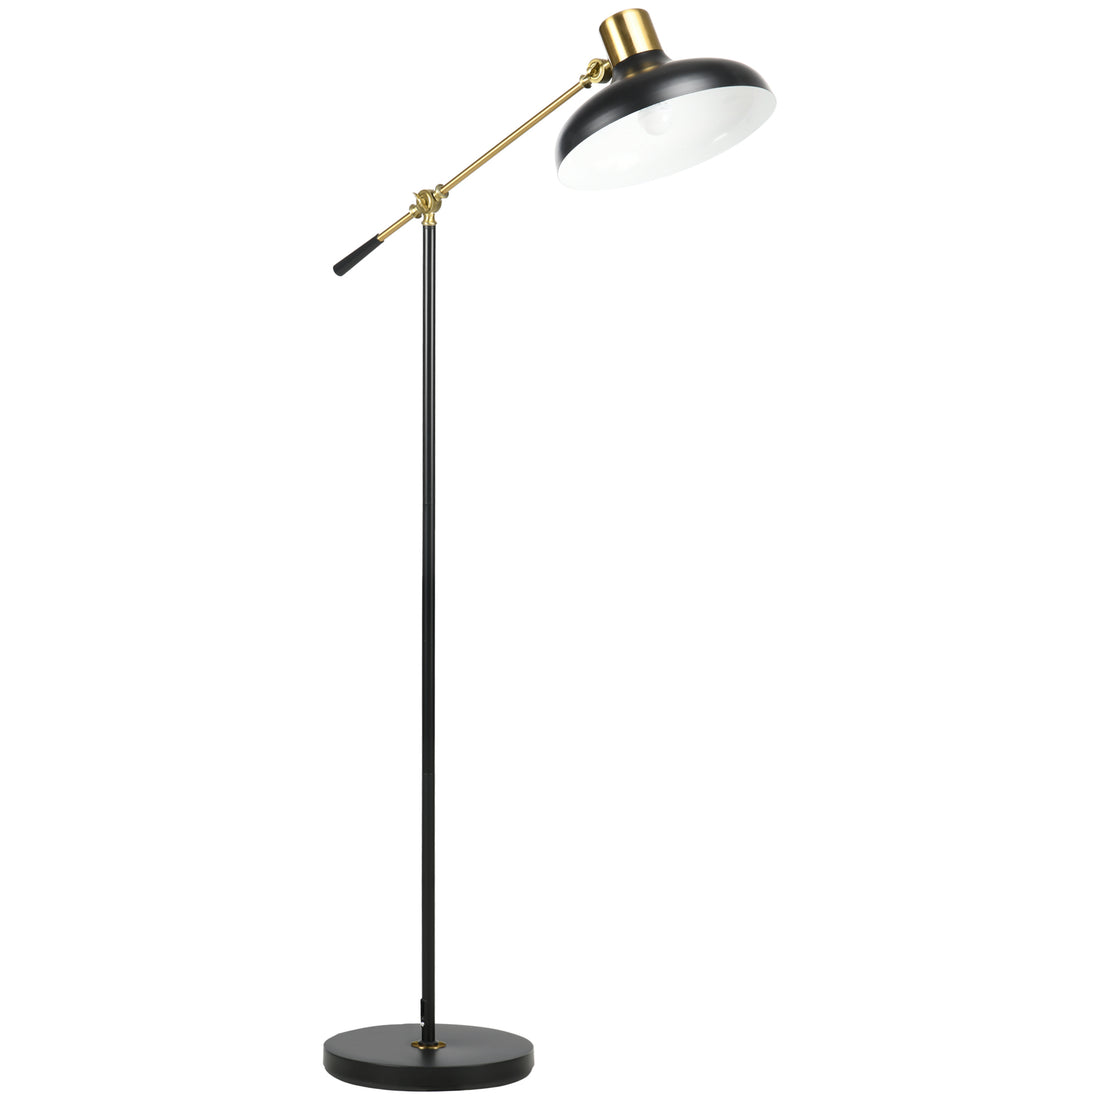 Adjustable Floor Lamps for Living Room, Standing